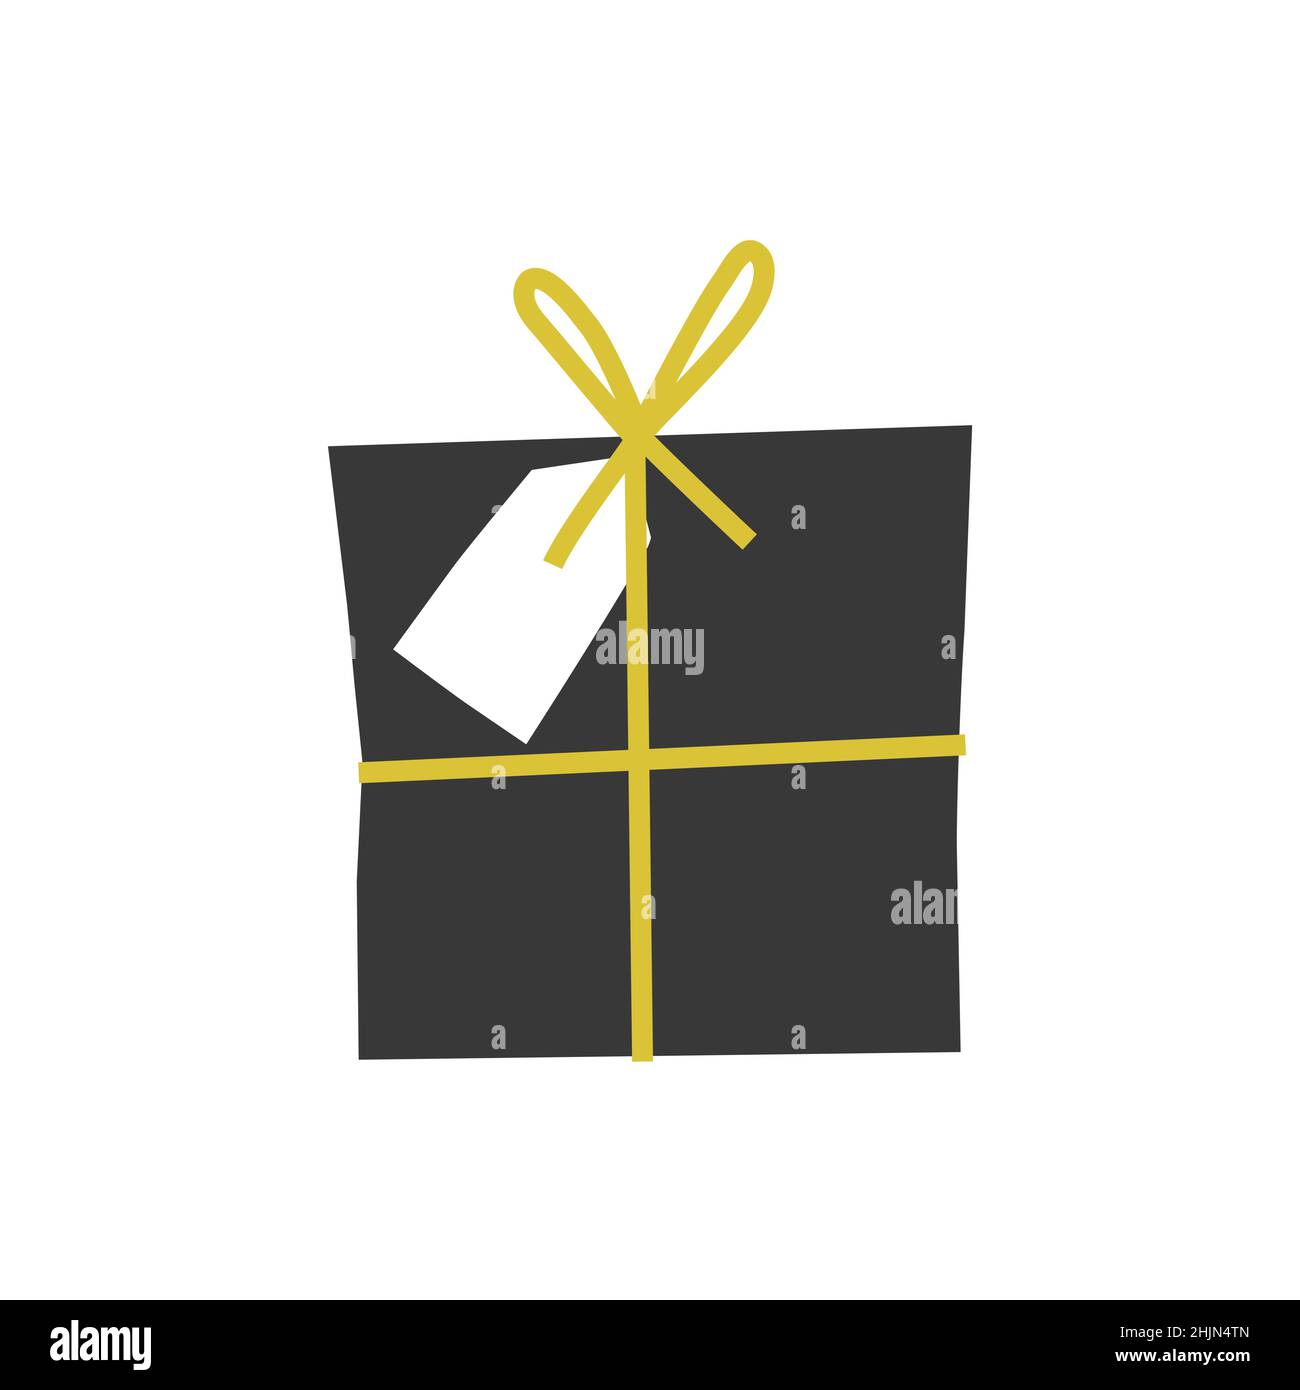 Vektor-isolierte flache Illustration. Schwarze quadratische Geschenkbox ist Papier verpackt und hat goldenes Band, weißes Etikett als Zeichen von Weihnachten und Neujahr Geschenk Stock Vektor